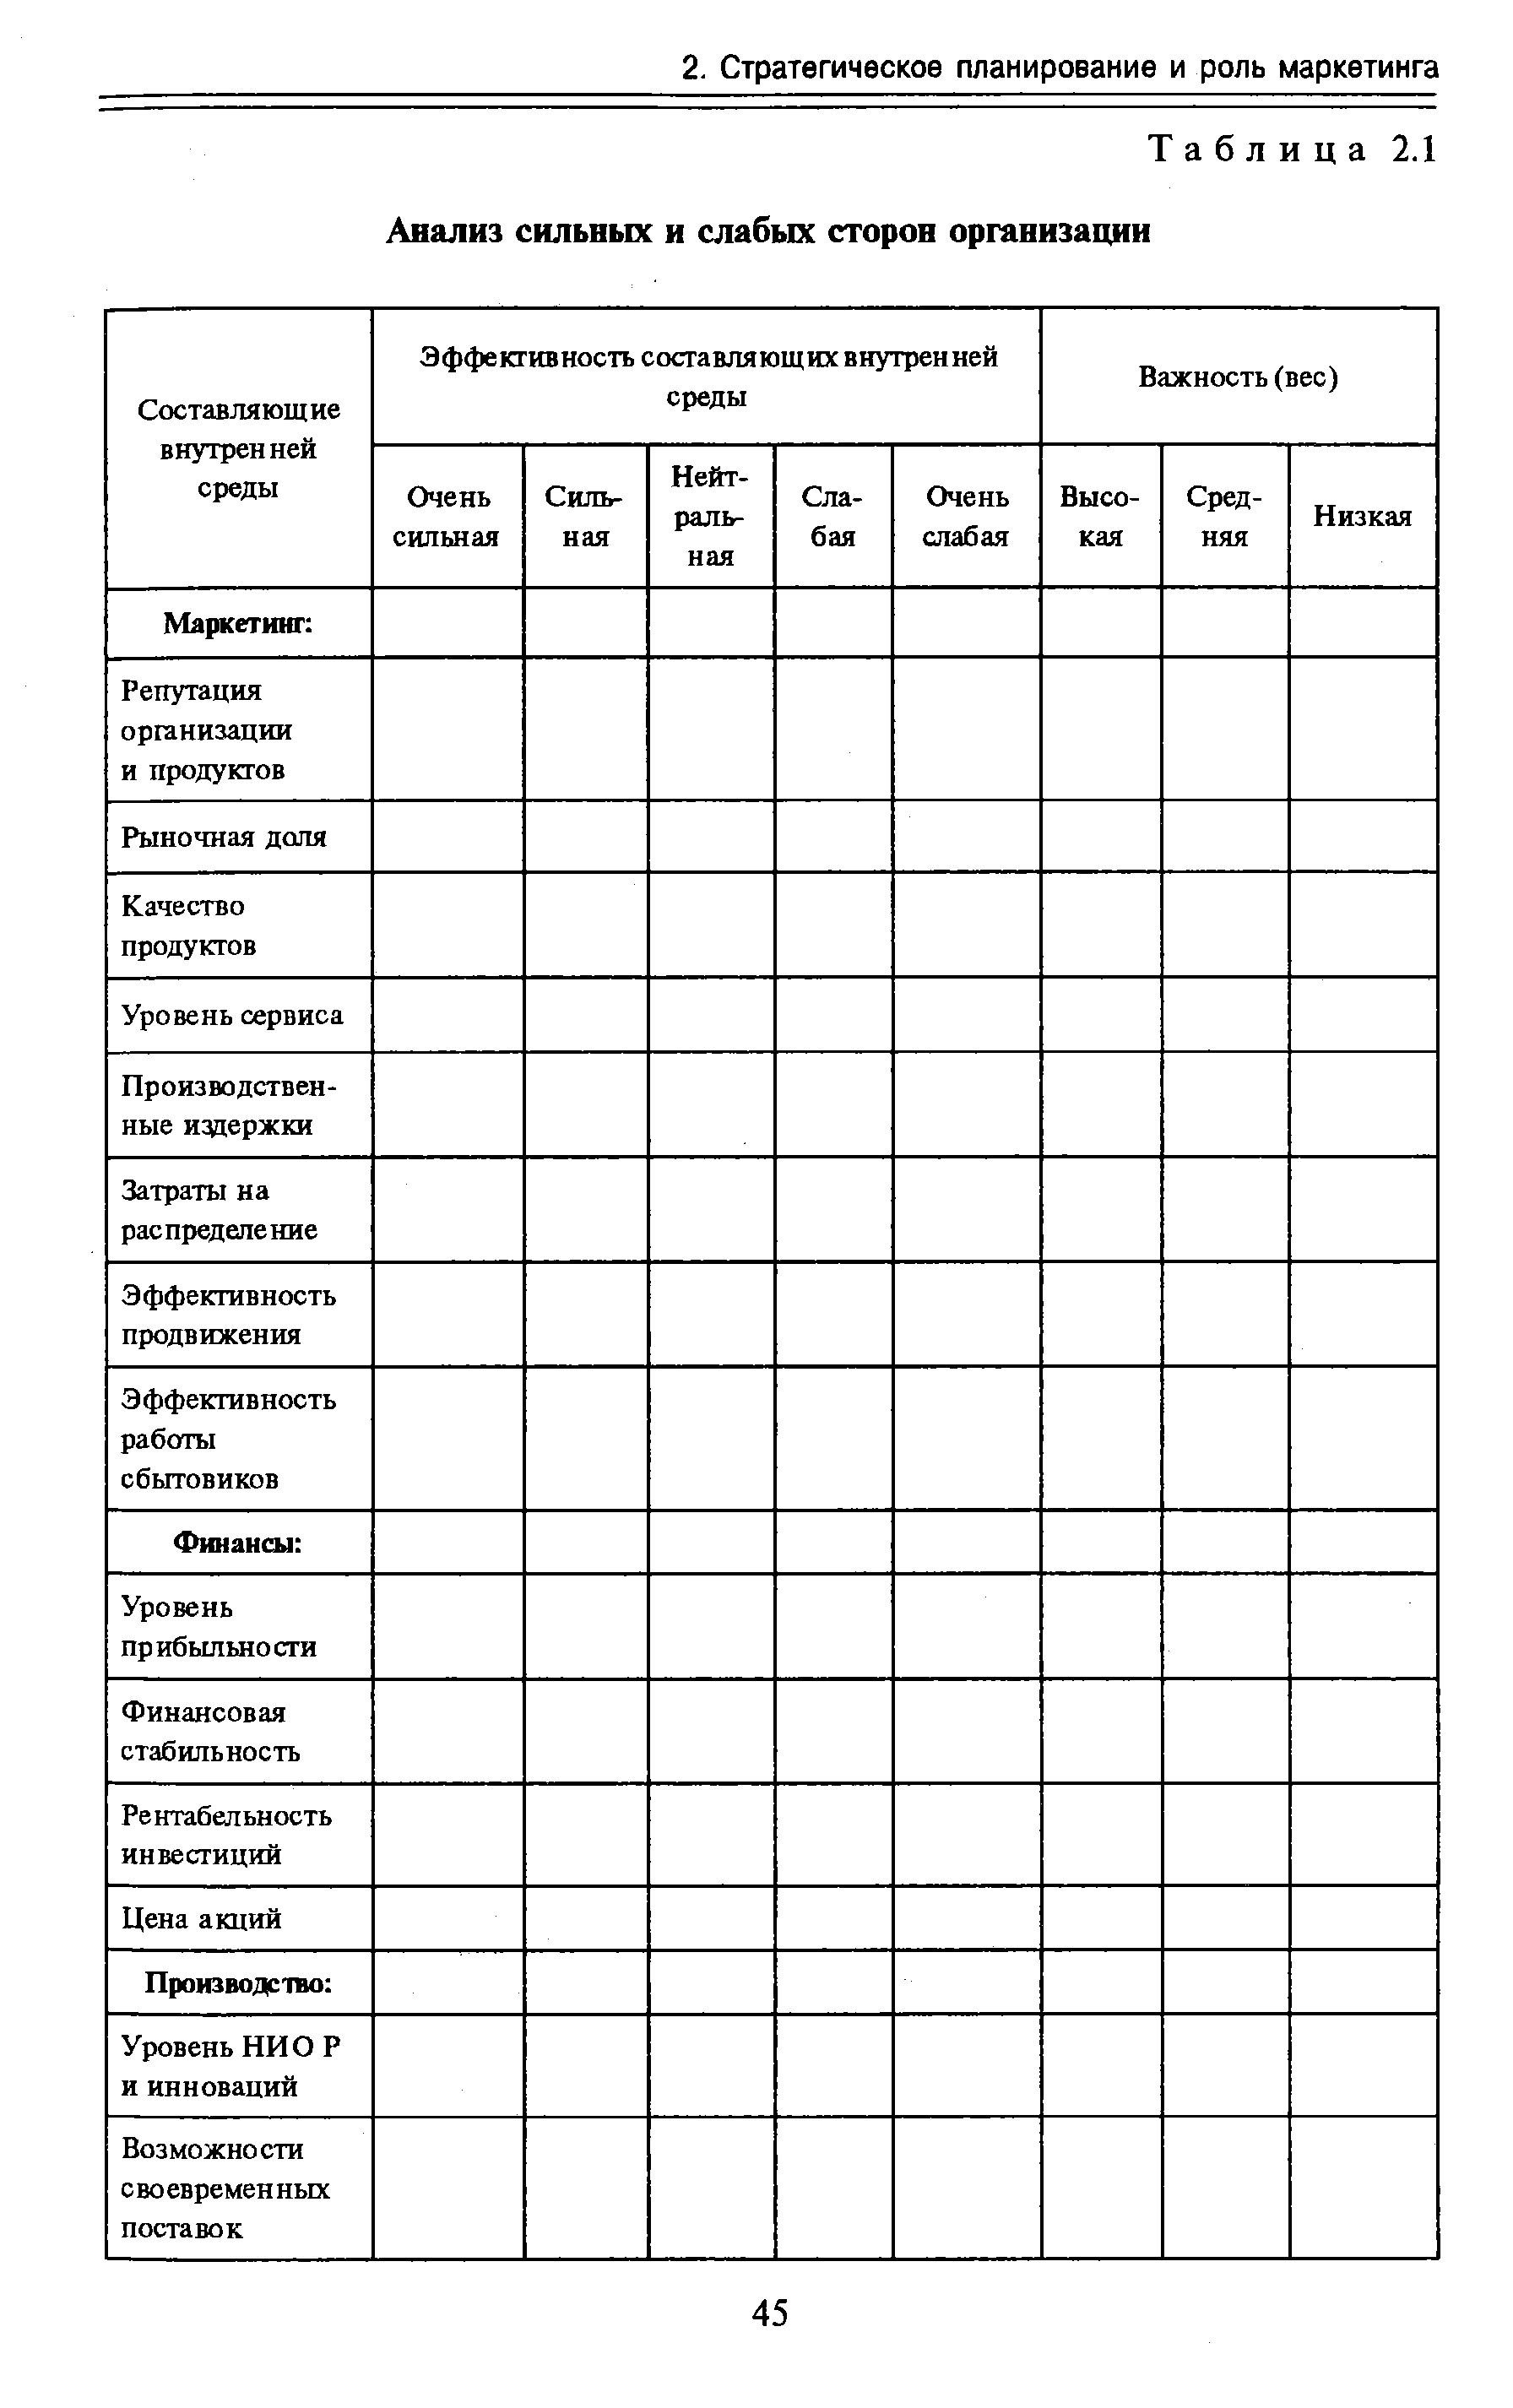 Таблица 2.1 Анализ сильных и слабых сторон организации
